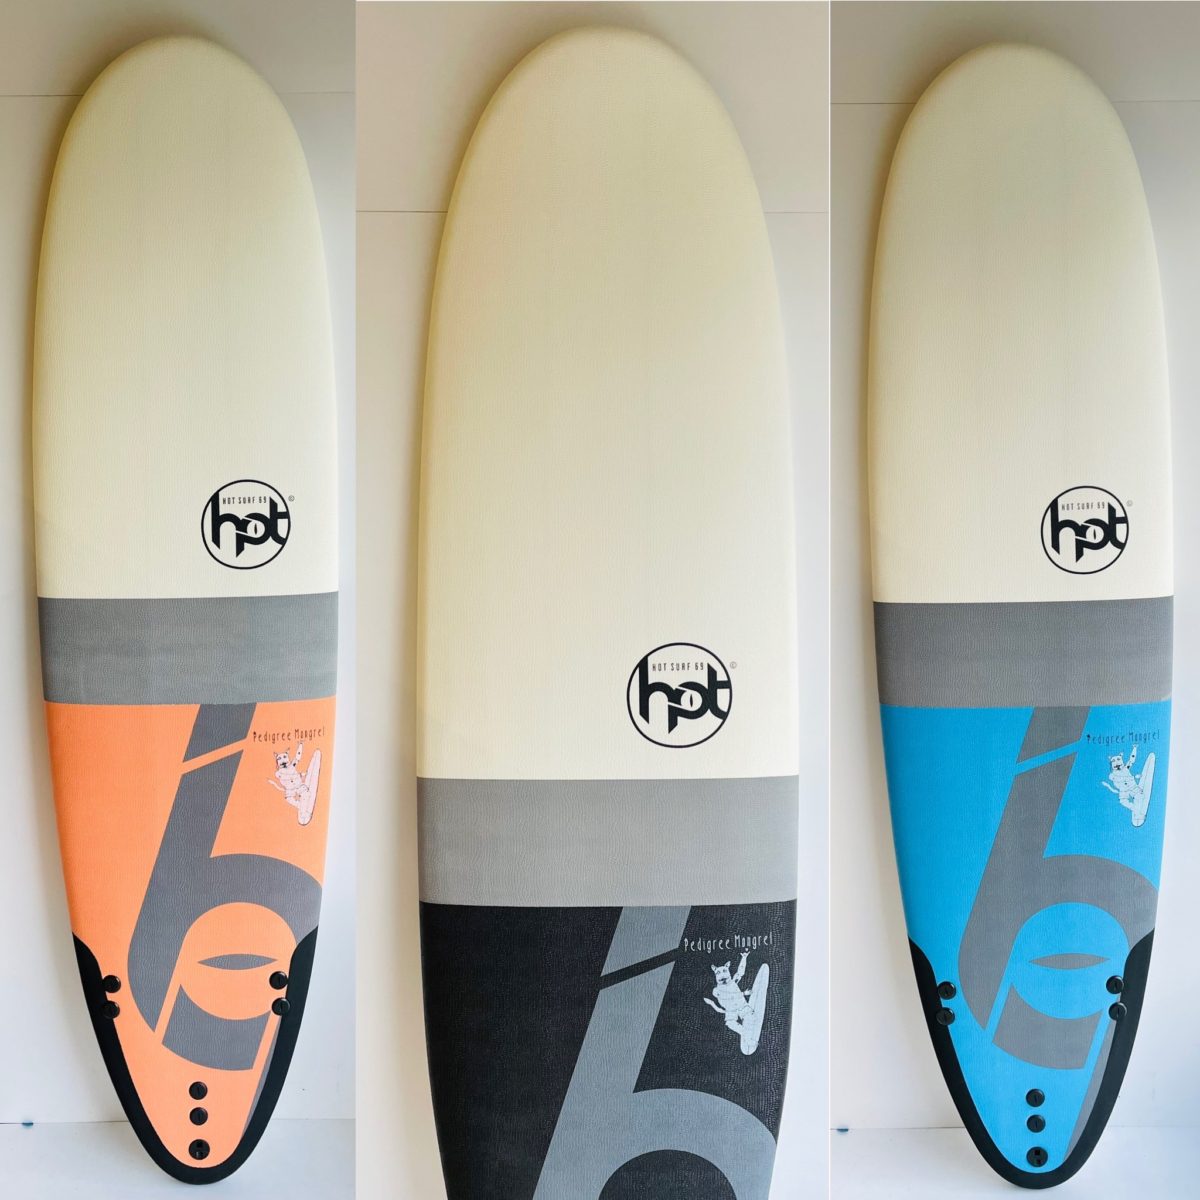 Hotsurf 69 7 0 Softboard Beginners Surfboard Package Deal